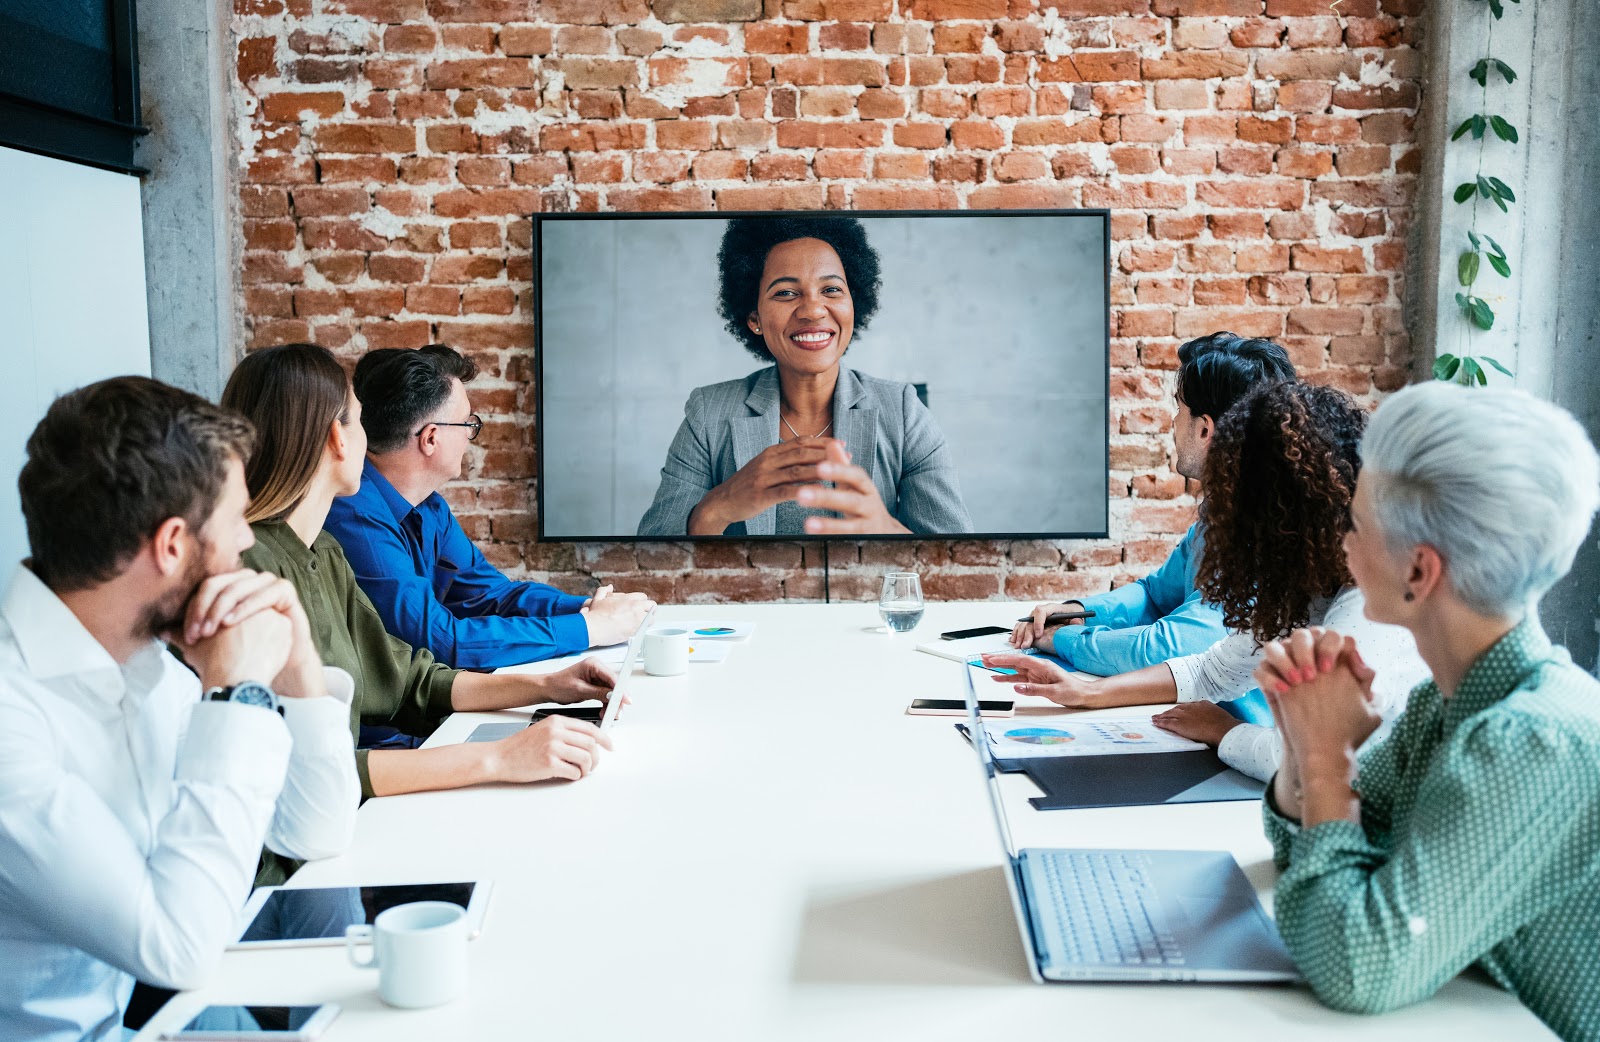 云视频会议大大提高了企业与外部人员沟通效率 第1张